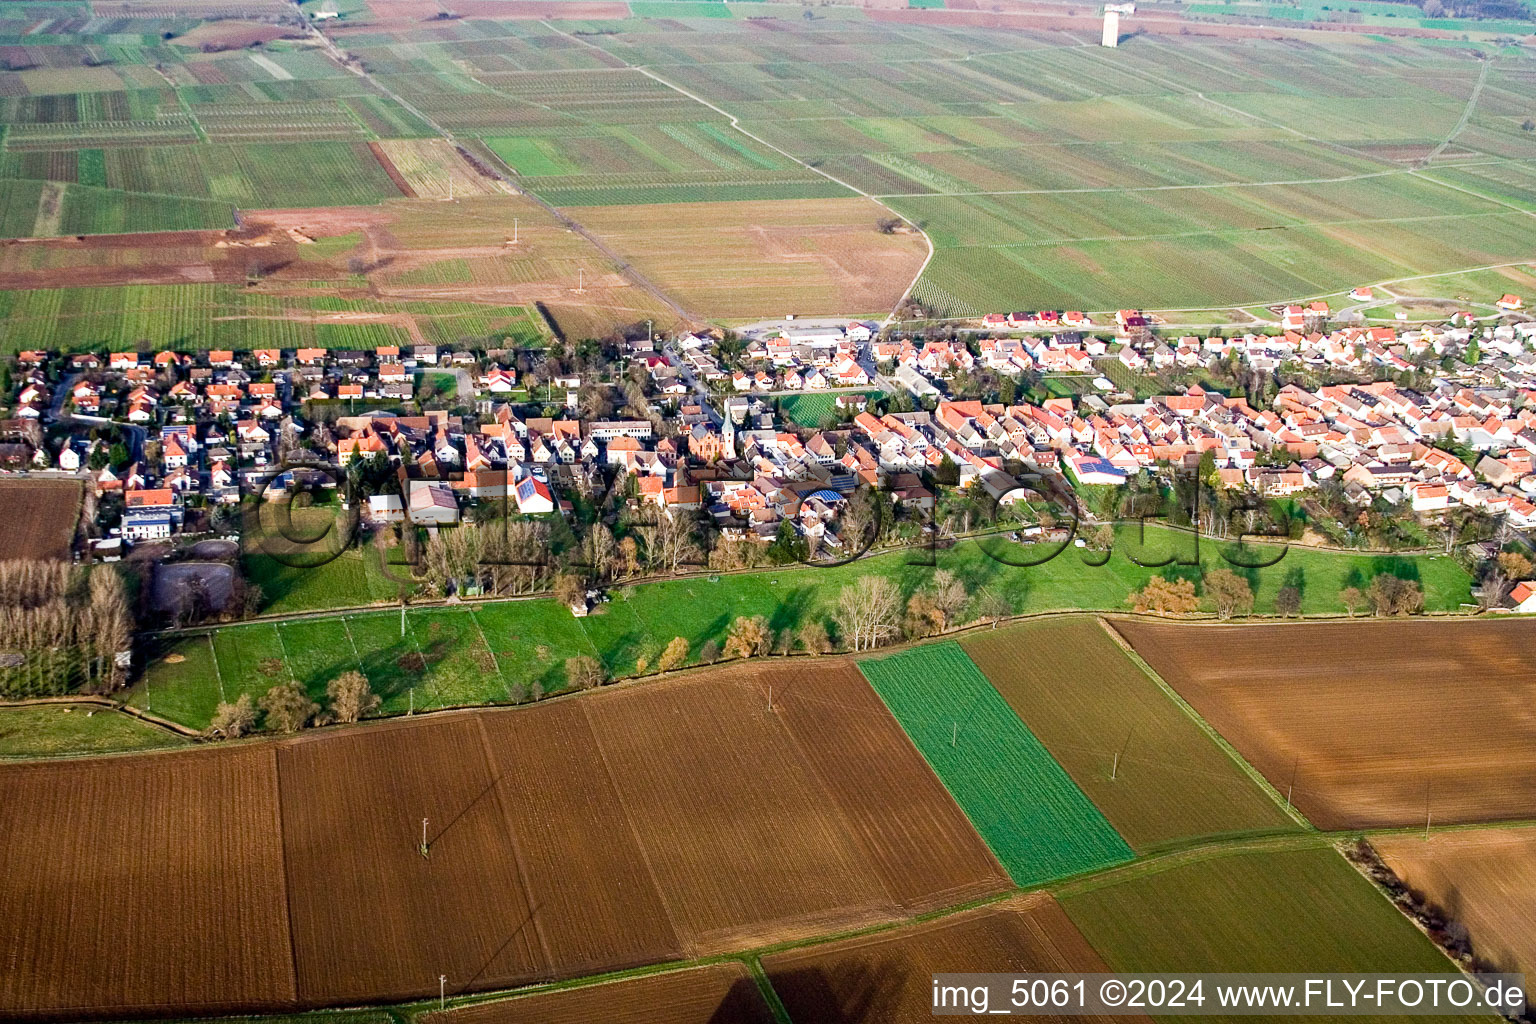 Photographie aérienne de Champs agricoles et surfaces utilisables à le quartier Duttweiler in Neustadt an der Weinstraße dans le département Rhénanie-Palatinat, Allemagne